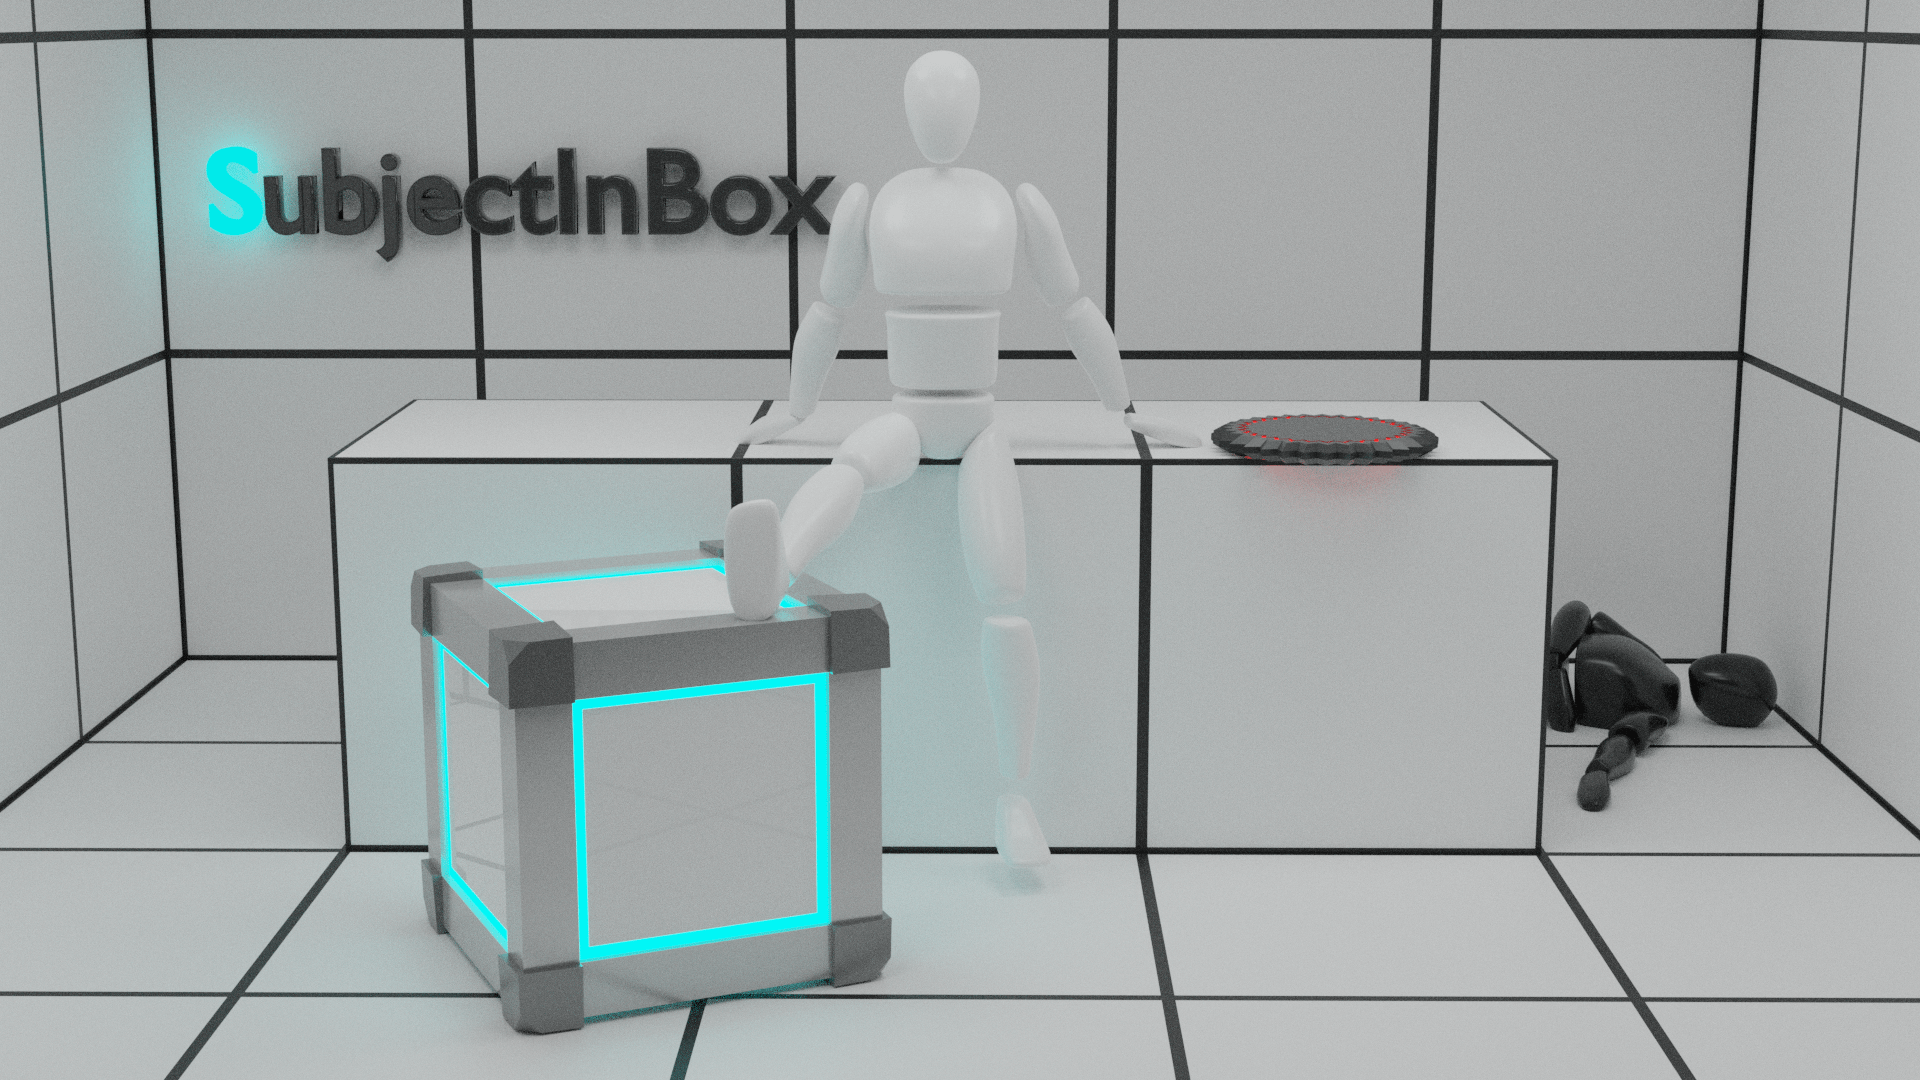 SubjectInBox